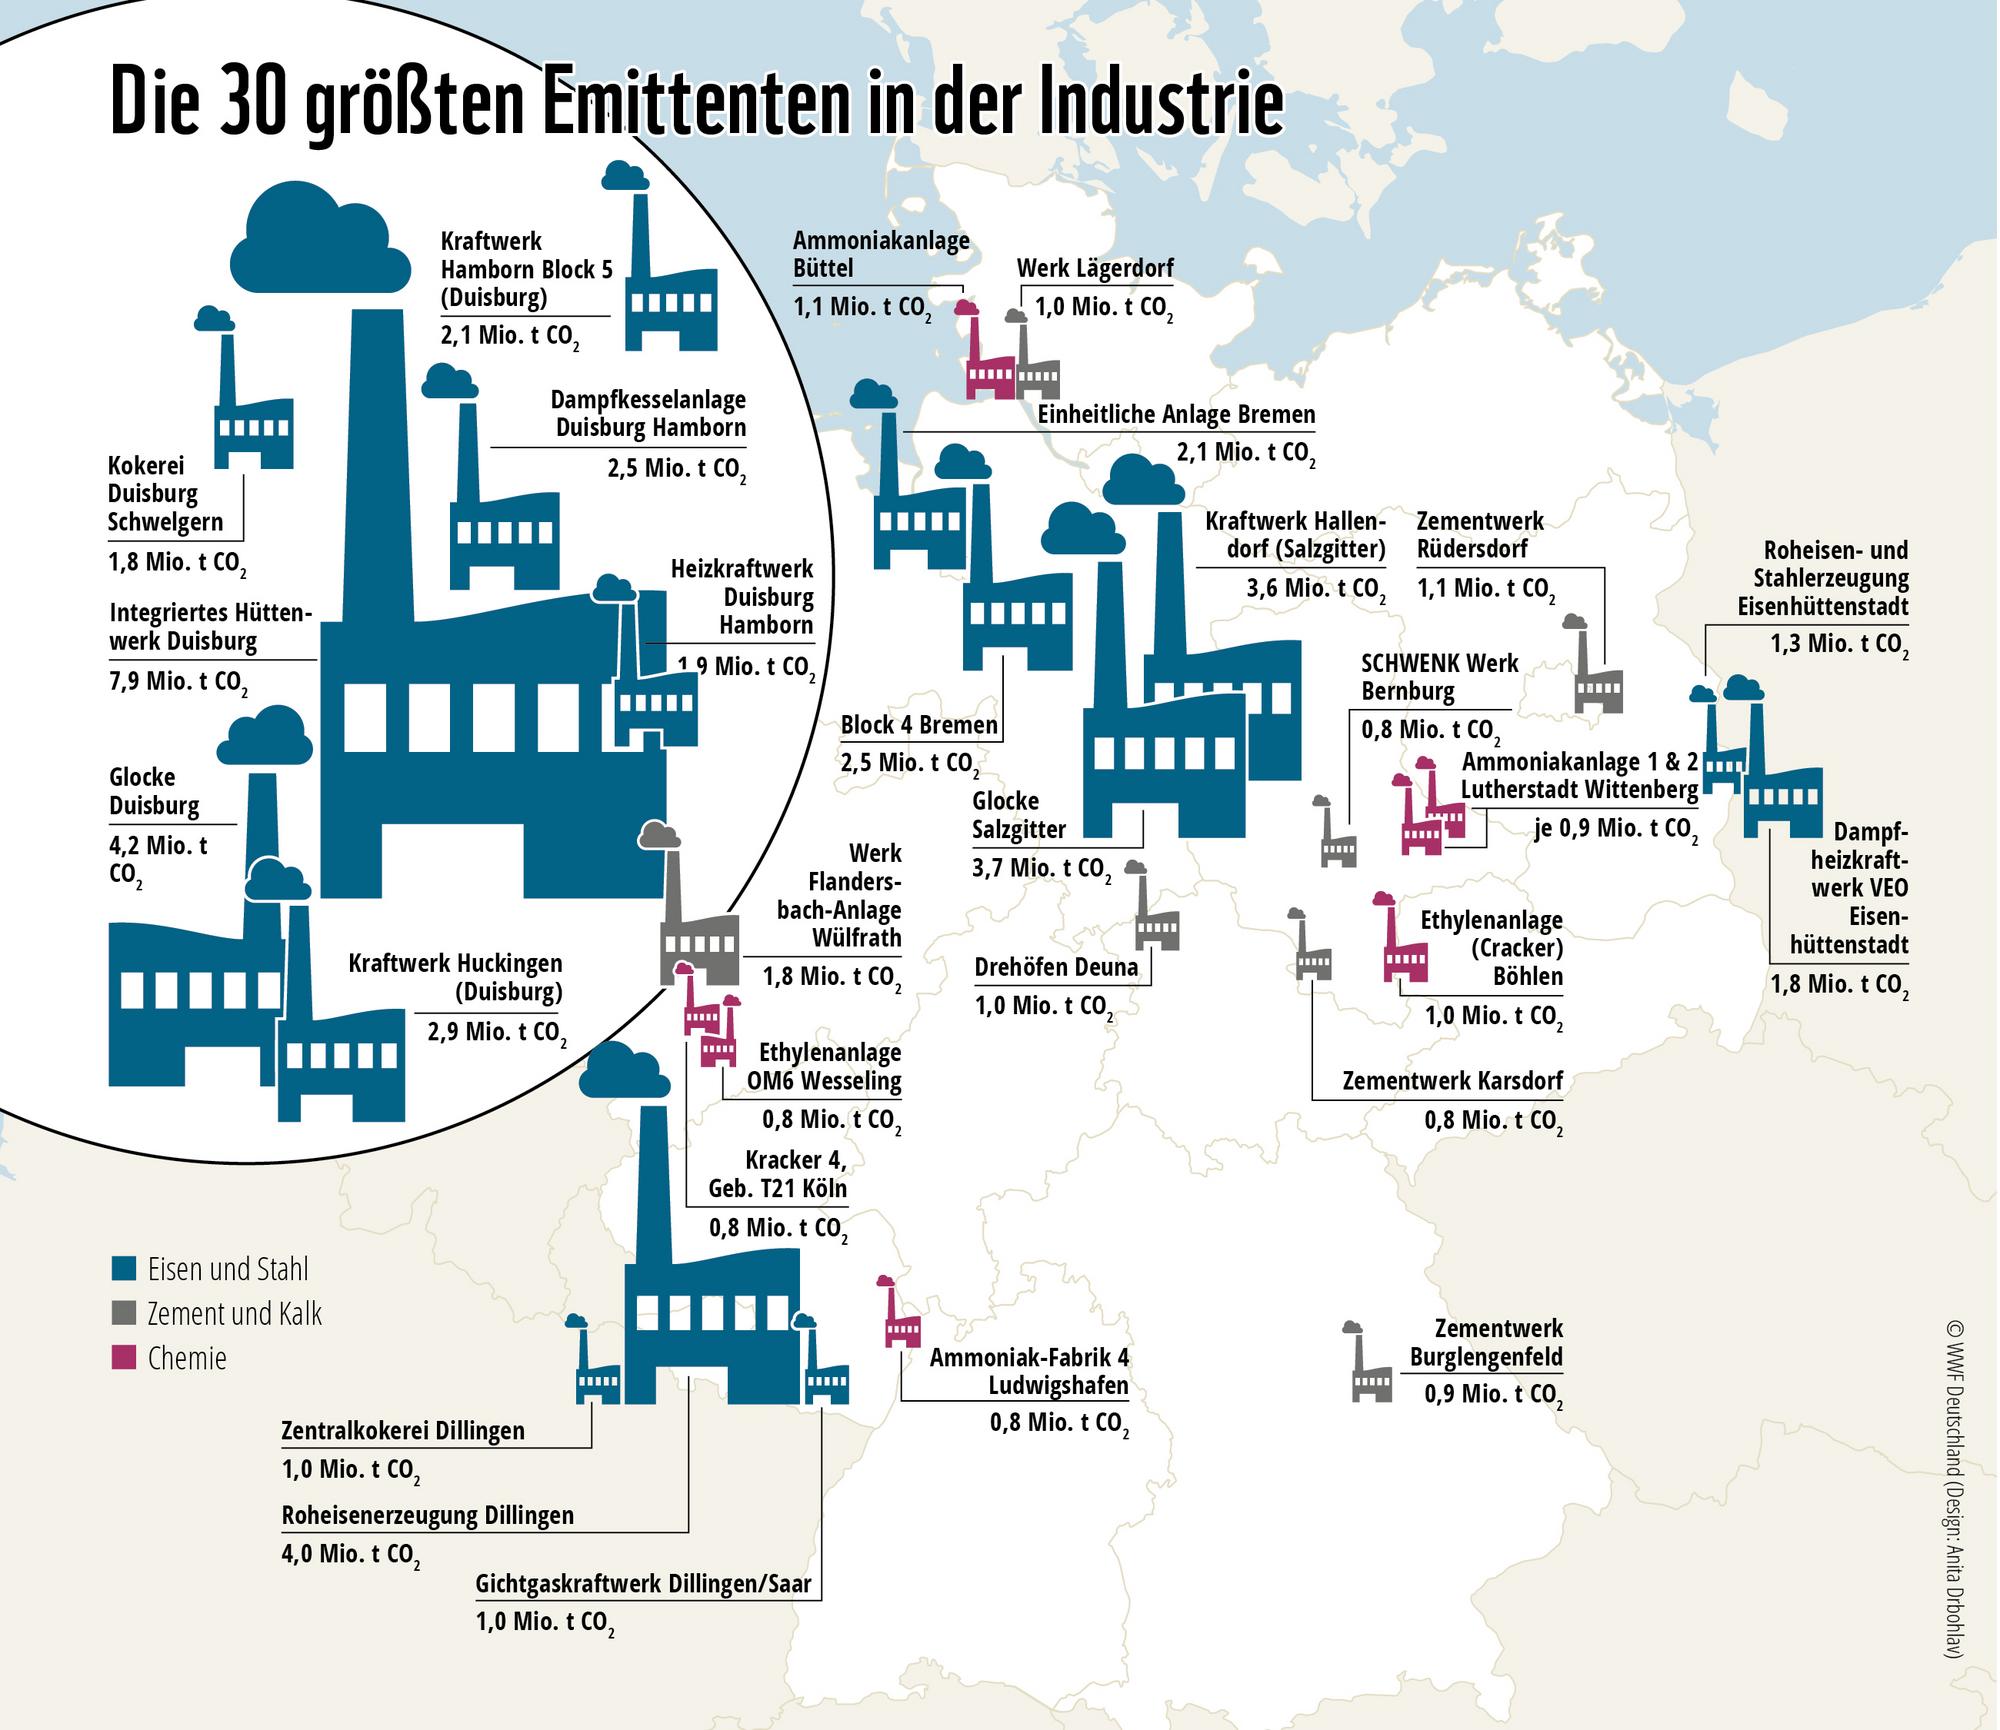 Abbildung der klimaschädlichsten Industrieanlagen auf einer Deutschlandkarte